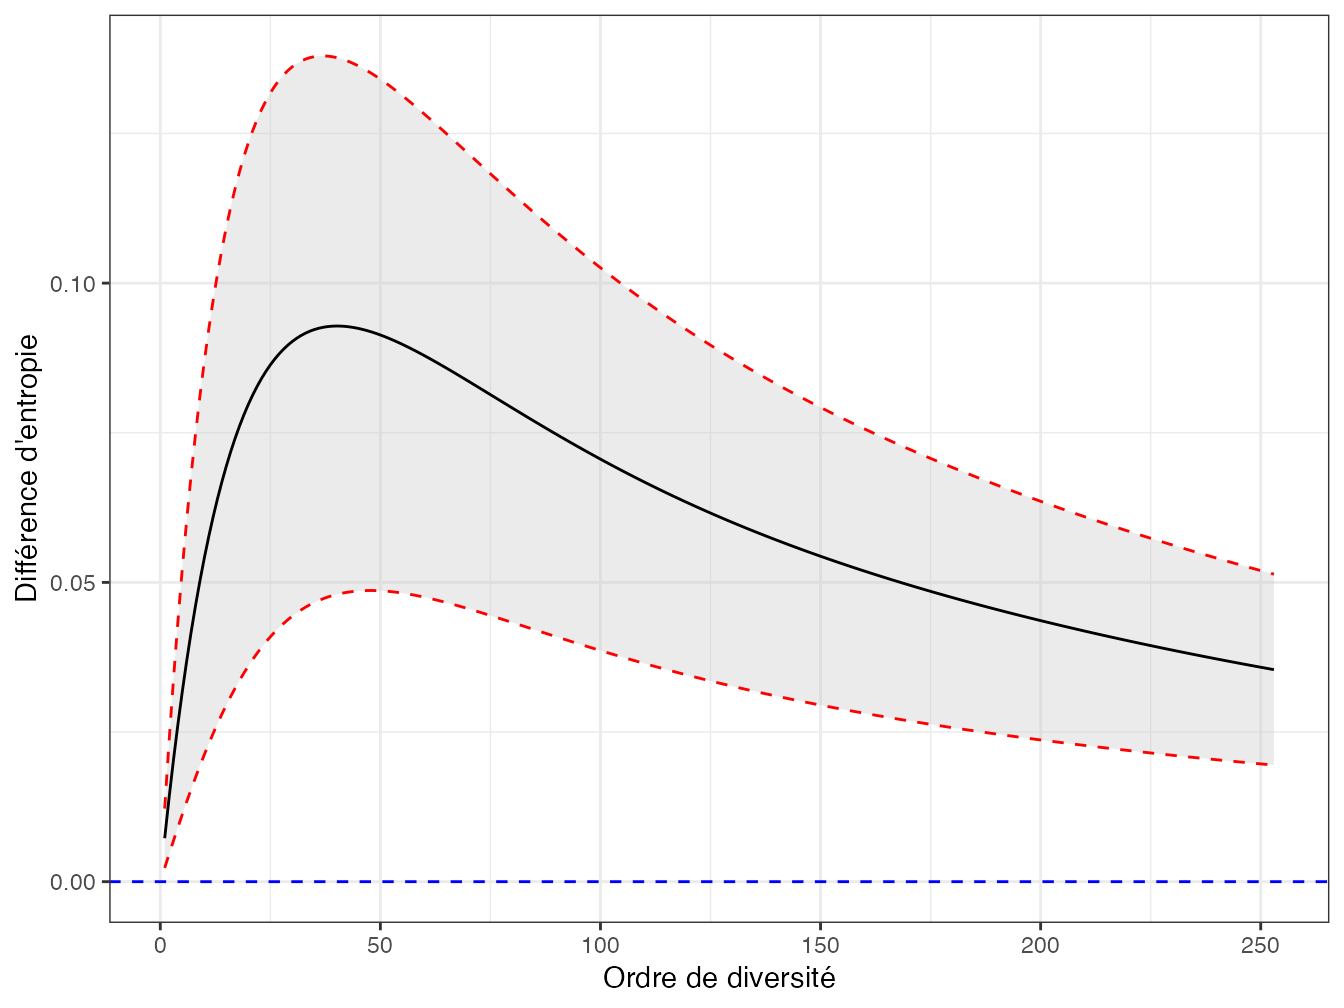 Différence entre les entropies de Simpson généralisées des parcelles 18 et 6 de Paracou avec son intervalle de confiance à 95%. La ligne horizontale représente l’hypothèse nulle d’égalité entre les entropies, qui peut être rejetée.